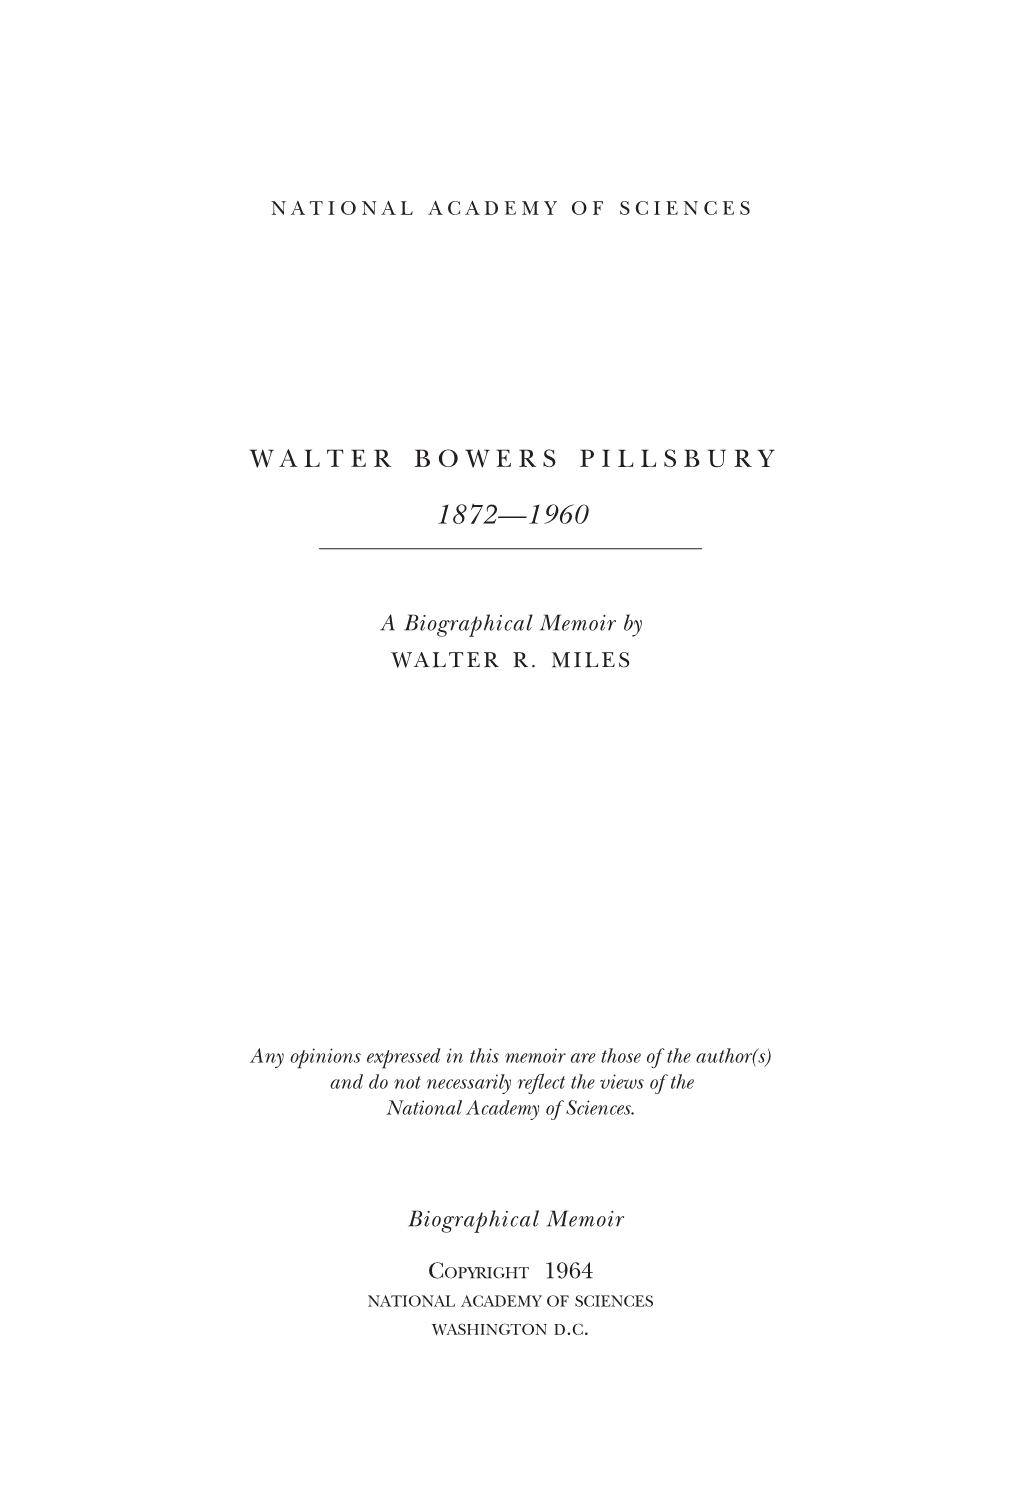 Walter Bowers Pillsbury